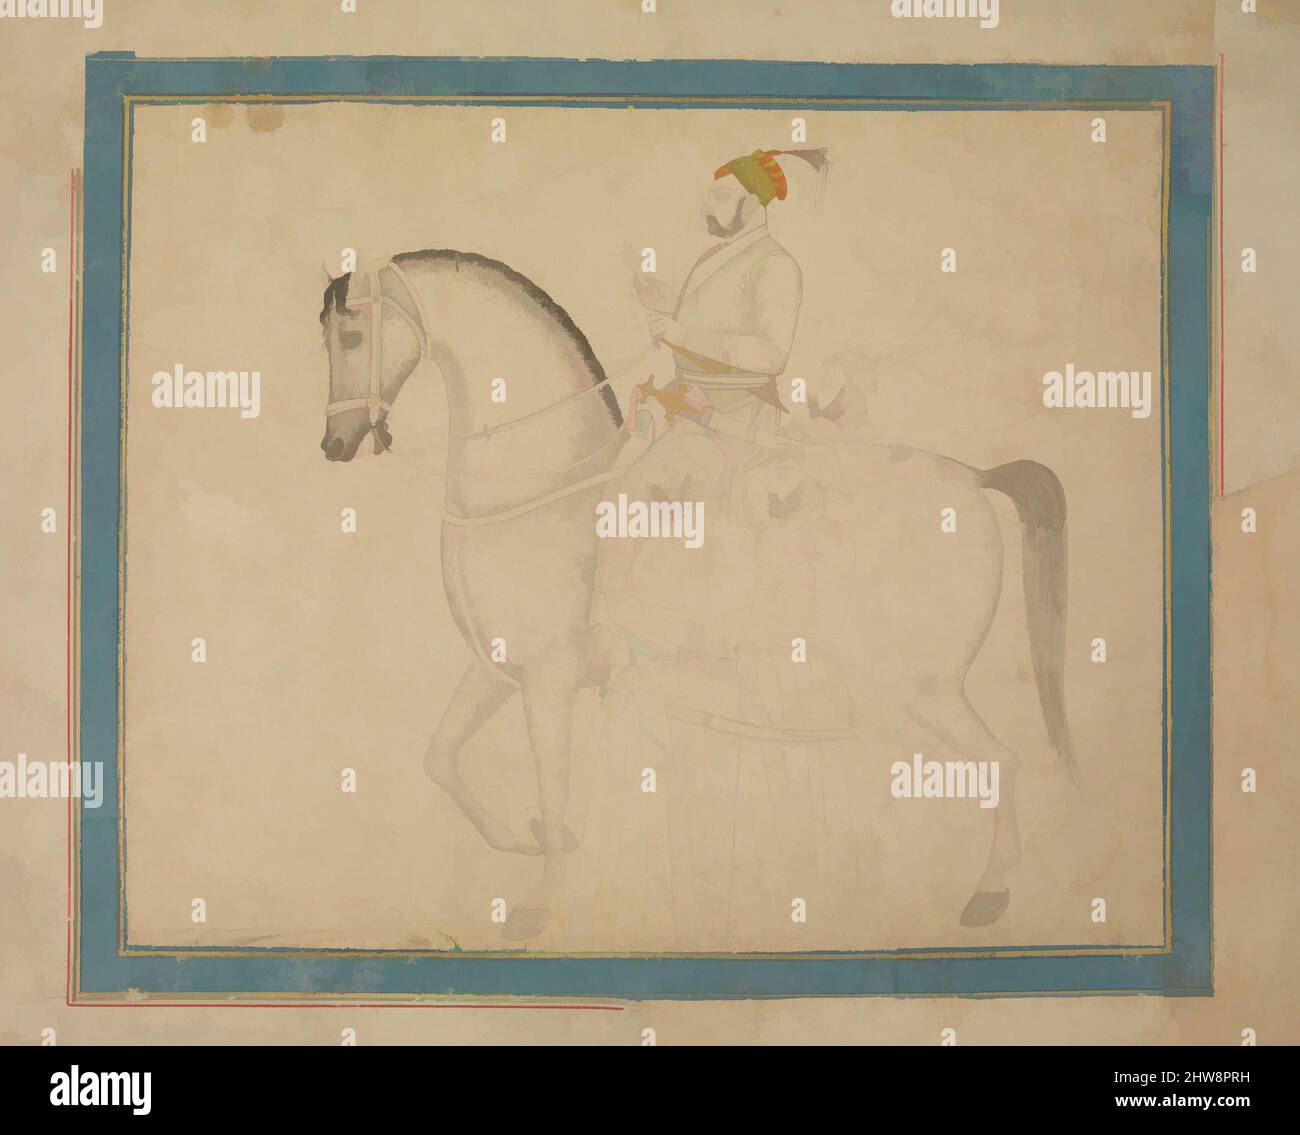 Arte ispirata da Nawab Muzaffar 'Ali Khan a Horseback, ca. 1730, attribuito all'India, inchiostro, acquerello opaco, oro su carta, 7 7/8 x 9 5/8 poll. (20 x 24,4 cm), Codices, attribuito a Rai Kalyan Das (Chitarman II) (attivo dal 1715 al 60), Muzaffar 'Ali Khan fu governatore di Ajmer sotto le opere classiche modernizzate da Artotop con un tuffo di modernità. Forme, colore e valore, impatto visivo accattivante sulle emozioni artistiche attraverso la libertà delle opere d'arte in modo contemporaneo. Un messaggio senza tempo che persegue una nuova direzione selvaggiamente creativa. Artisti che si rivolgono al supporto digitale e creano l'NFT Artotop Foto Stock